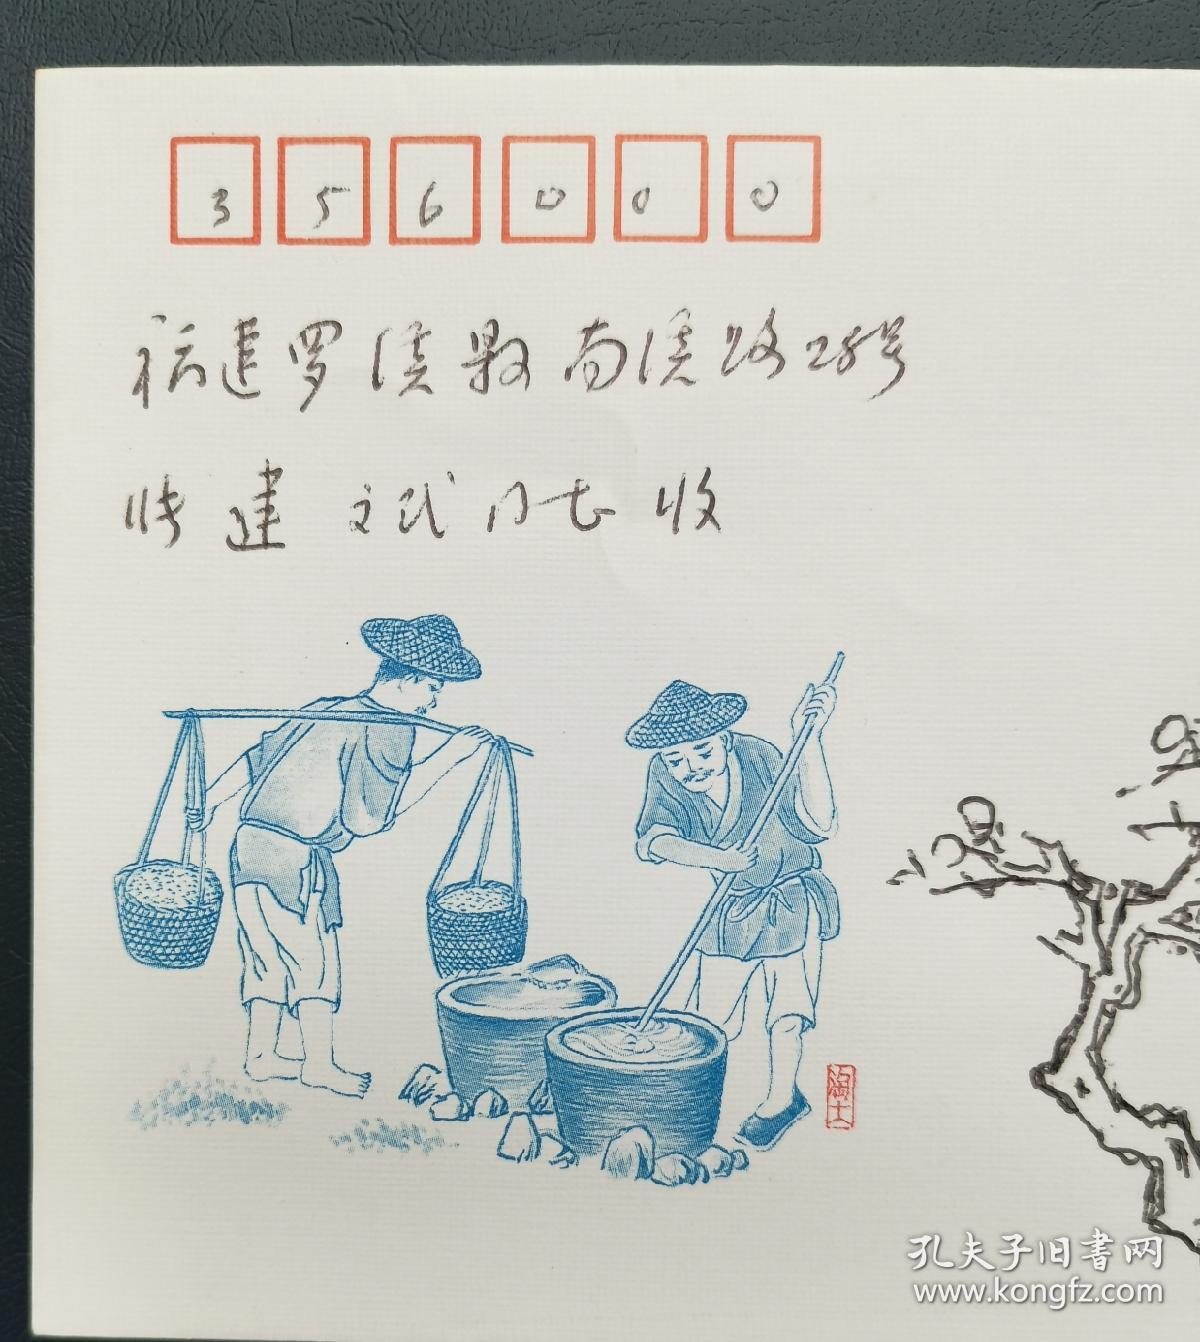 福建签藏名家张建斌旧藏：画家、美术史论家王伯敏手绘梅花图。